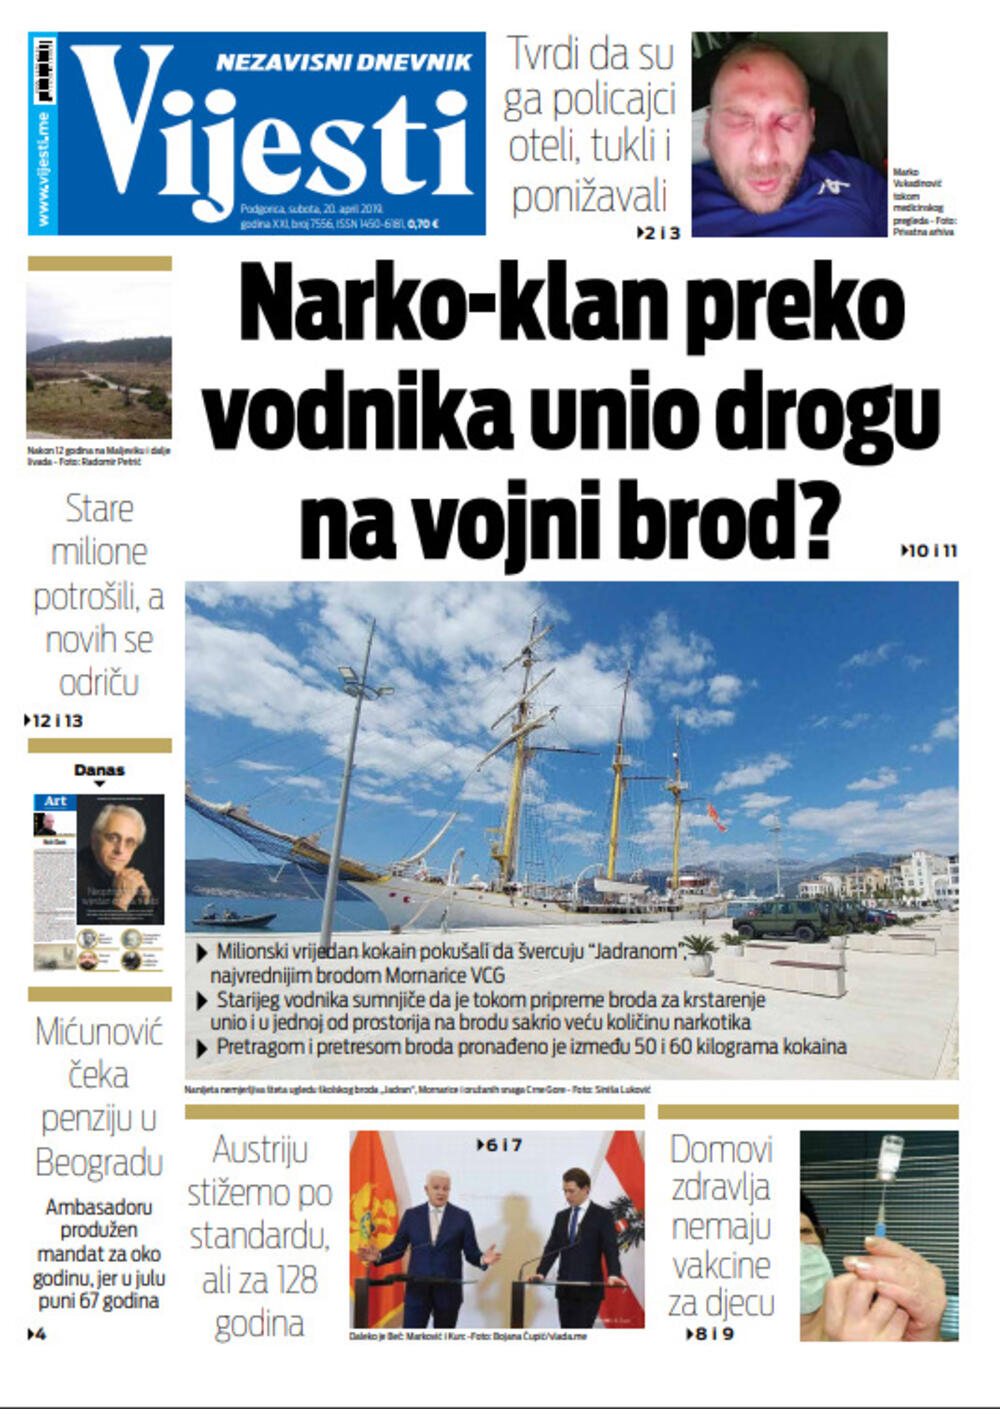 Naslovna strana "Vijesti" za 20. april, Foto: "Vijesti"